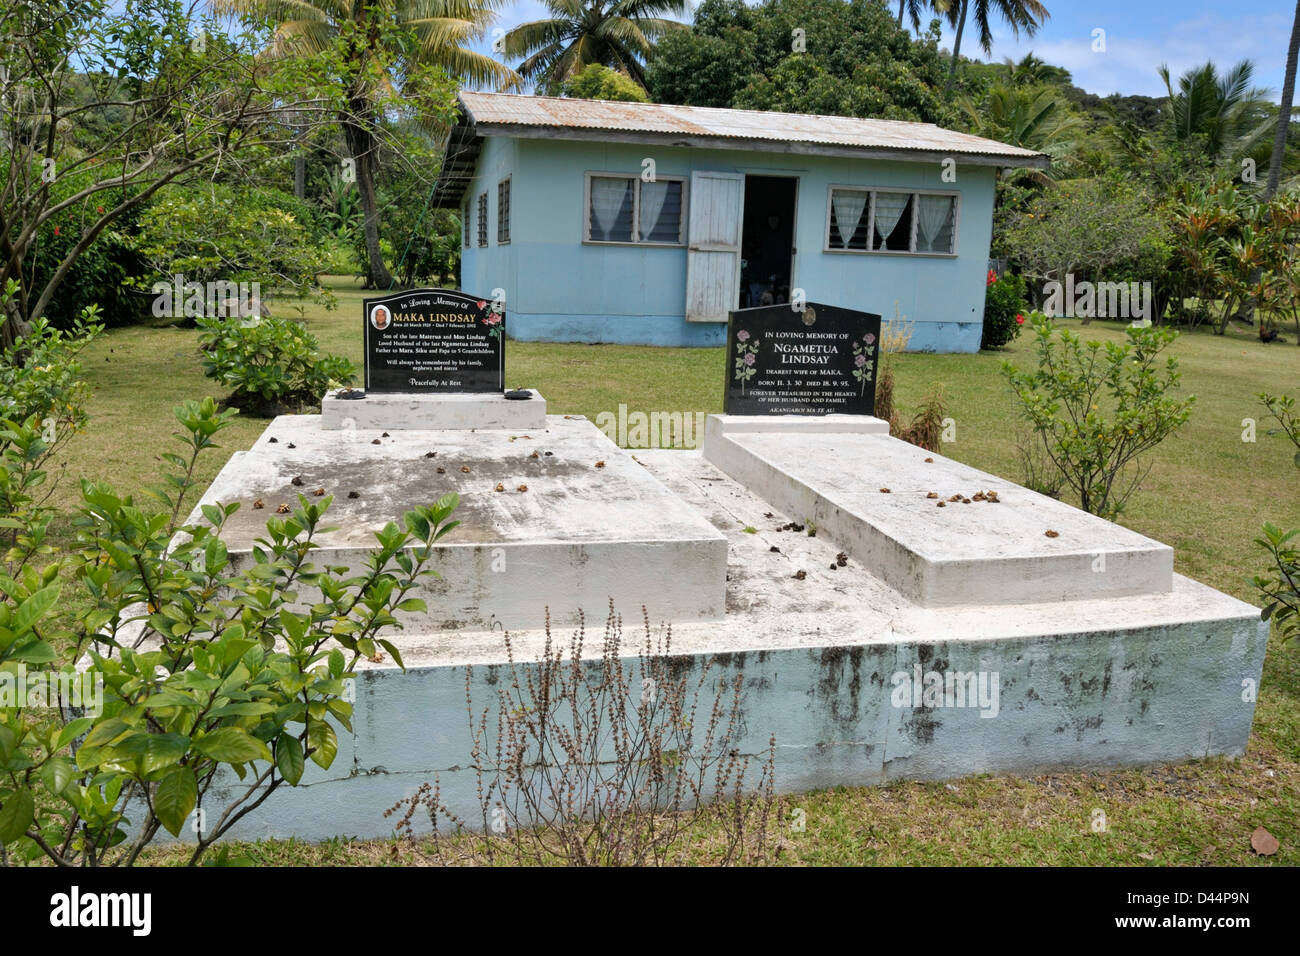 Tombe di famiglia di fronte a una casa in Rarotonga Isole Cook, una visione comune in Polinesia. Foto Stock